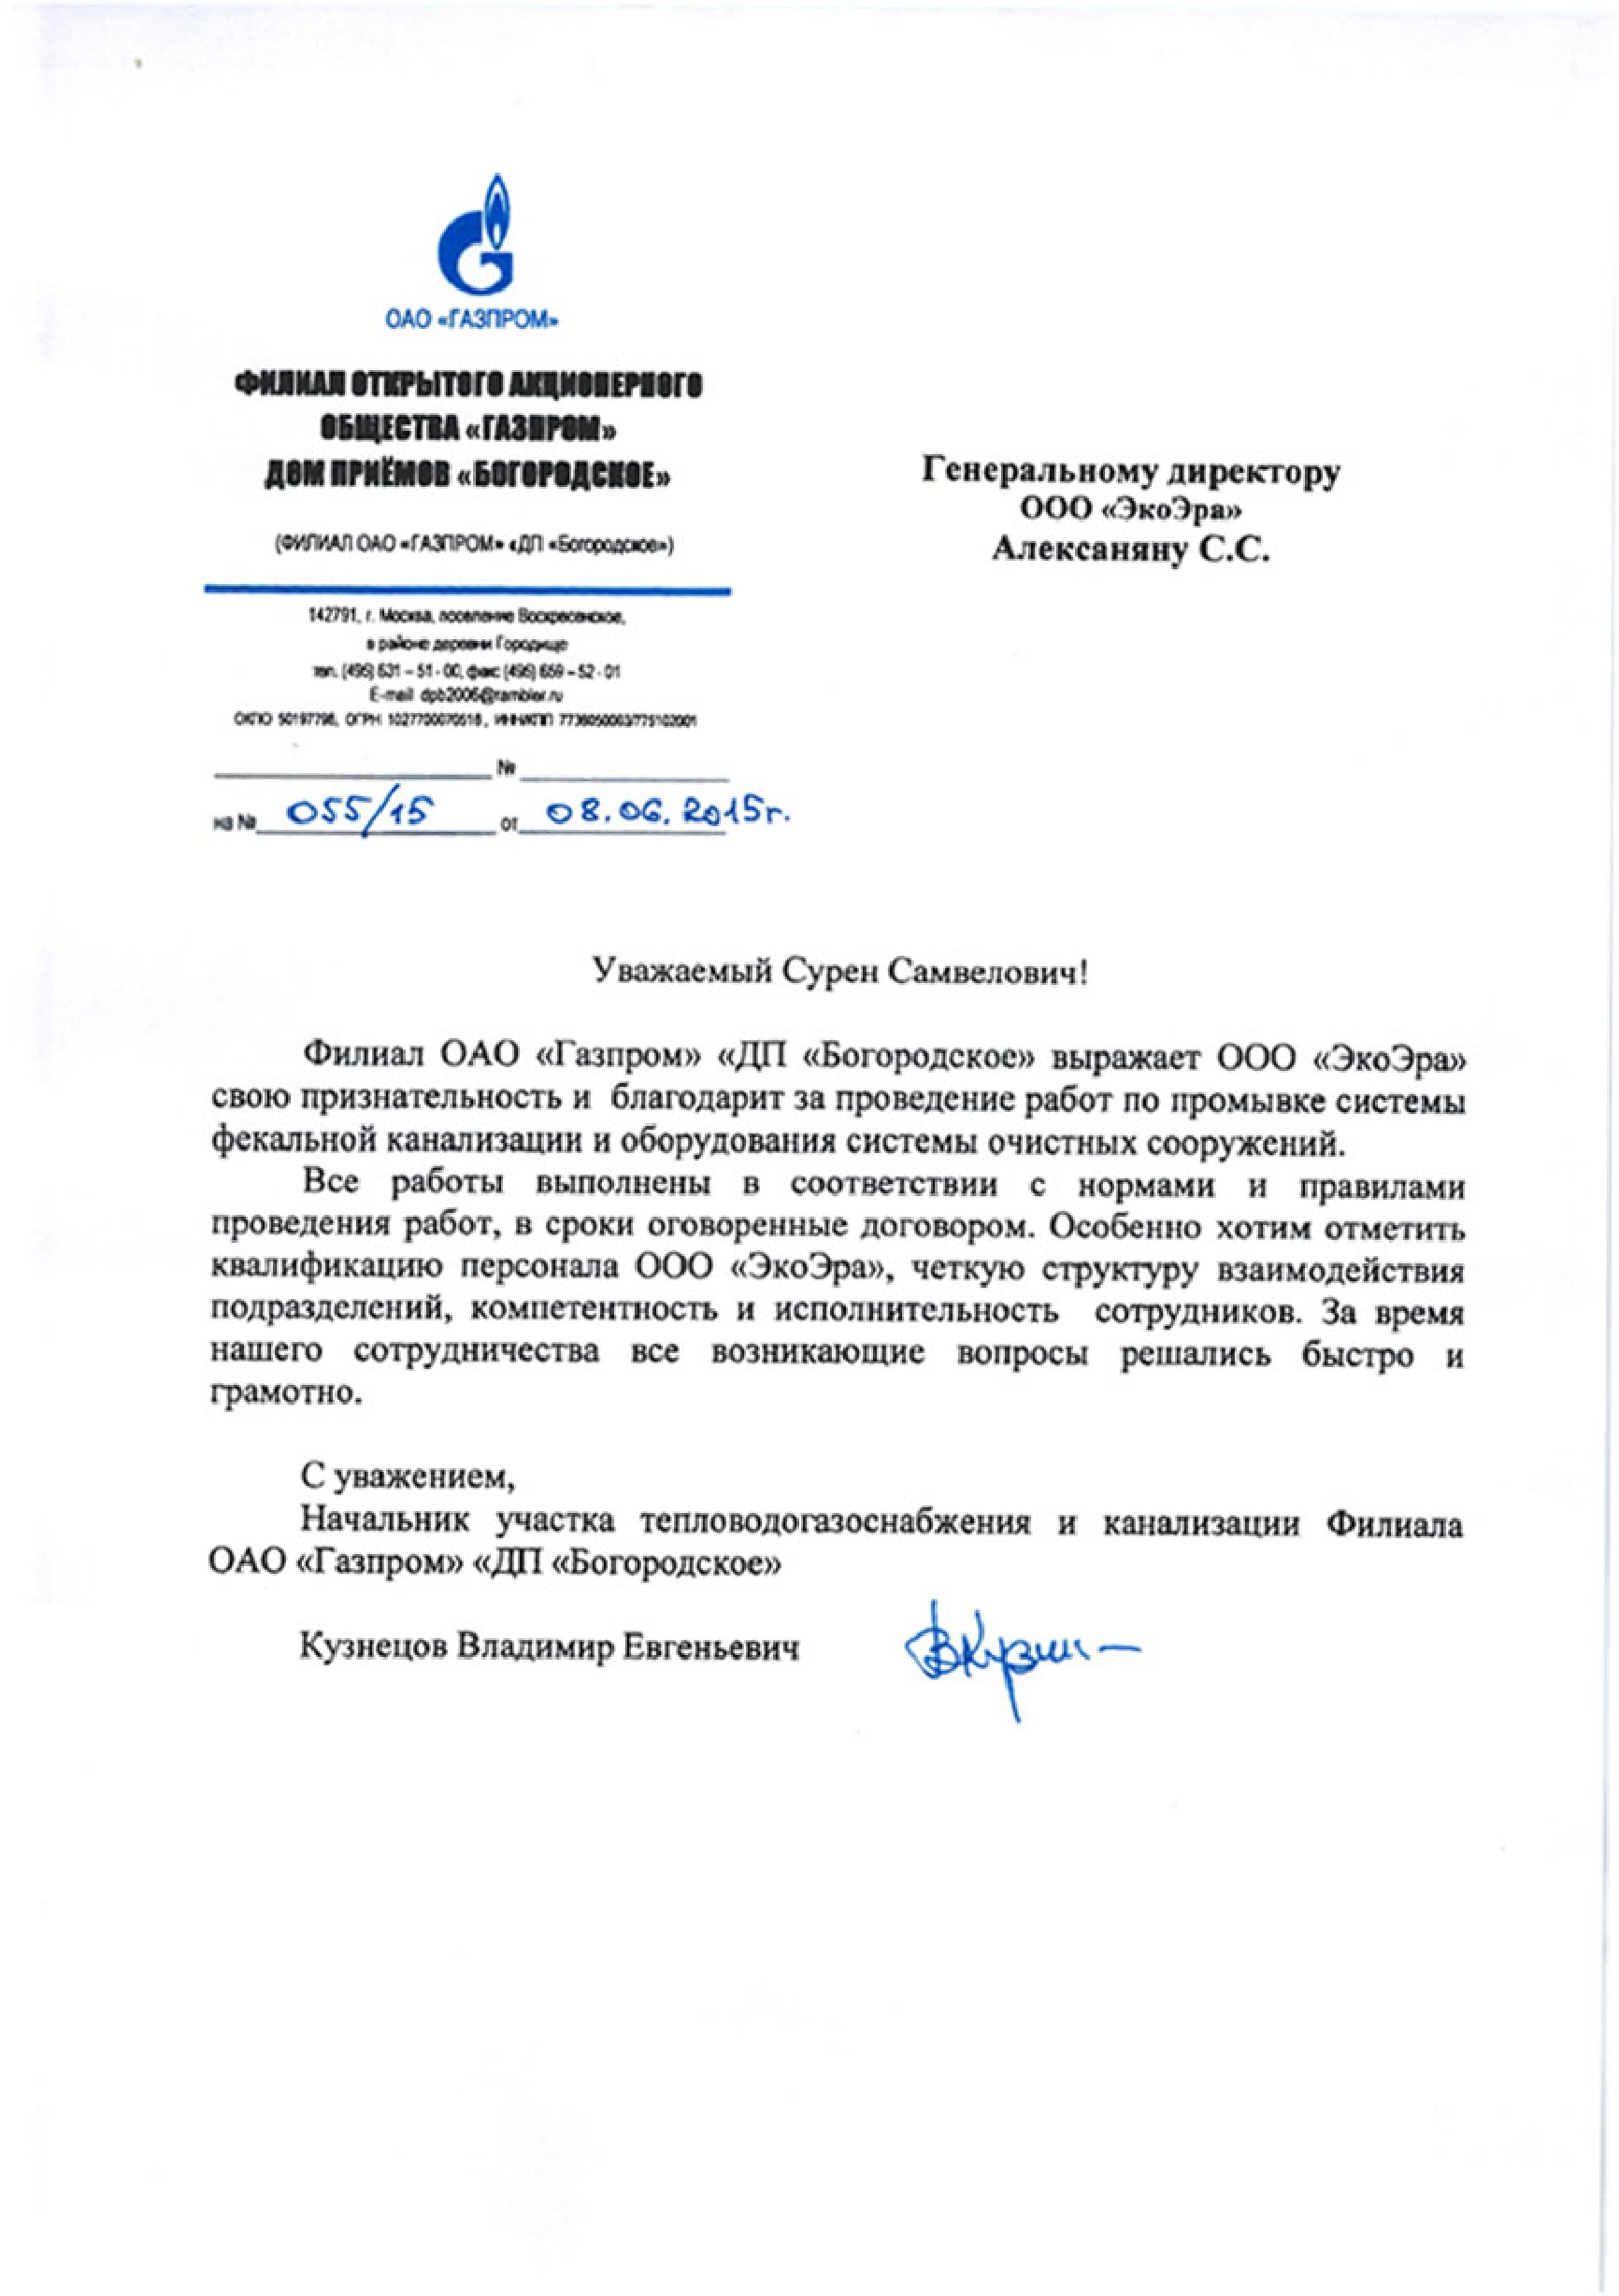 Скан письма от компании ОАО «ГАЗПРОМ»